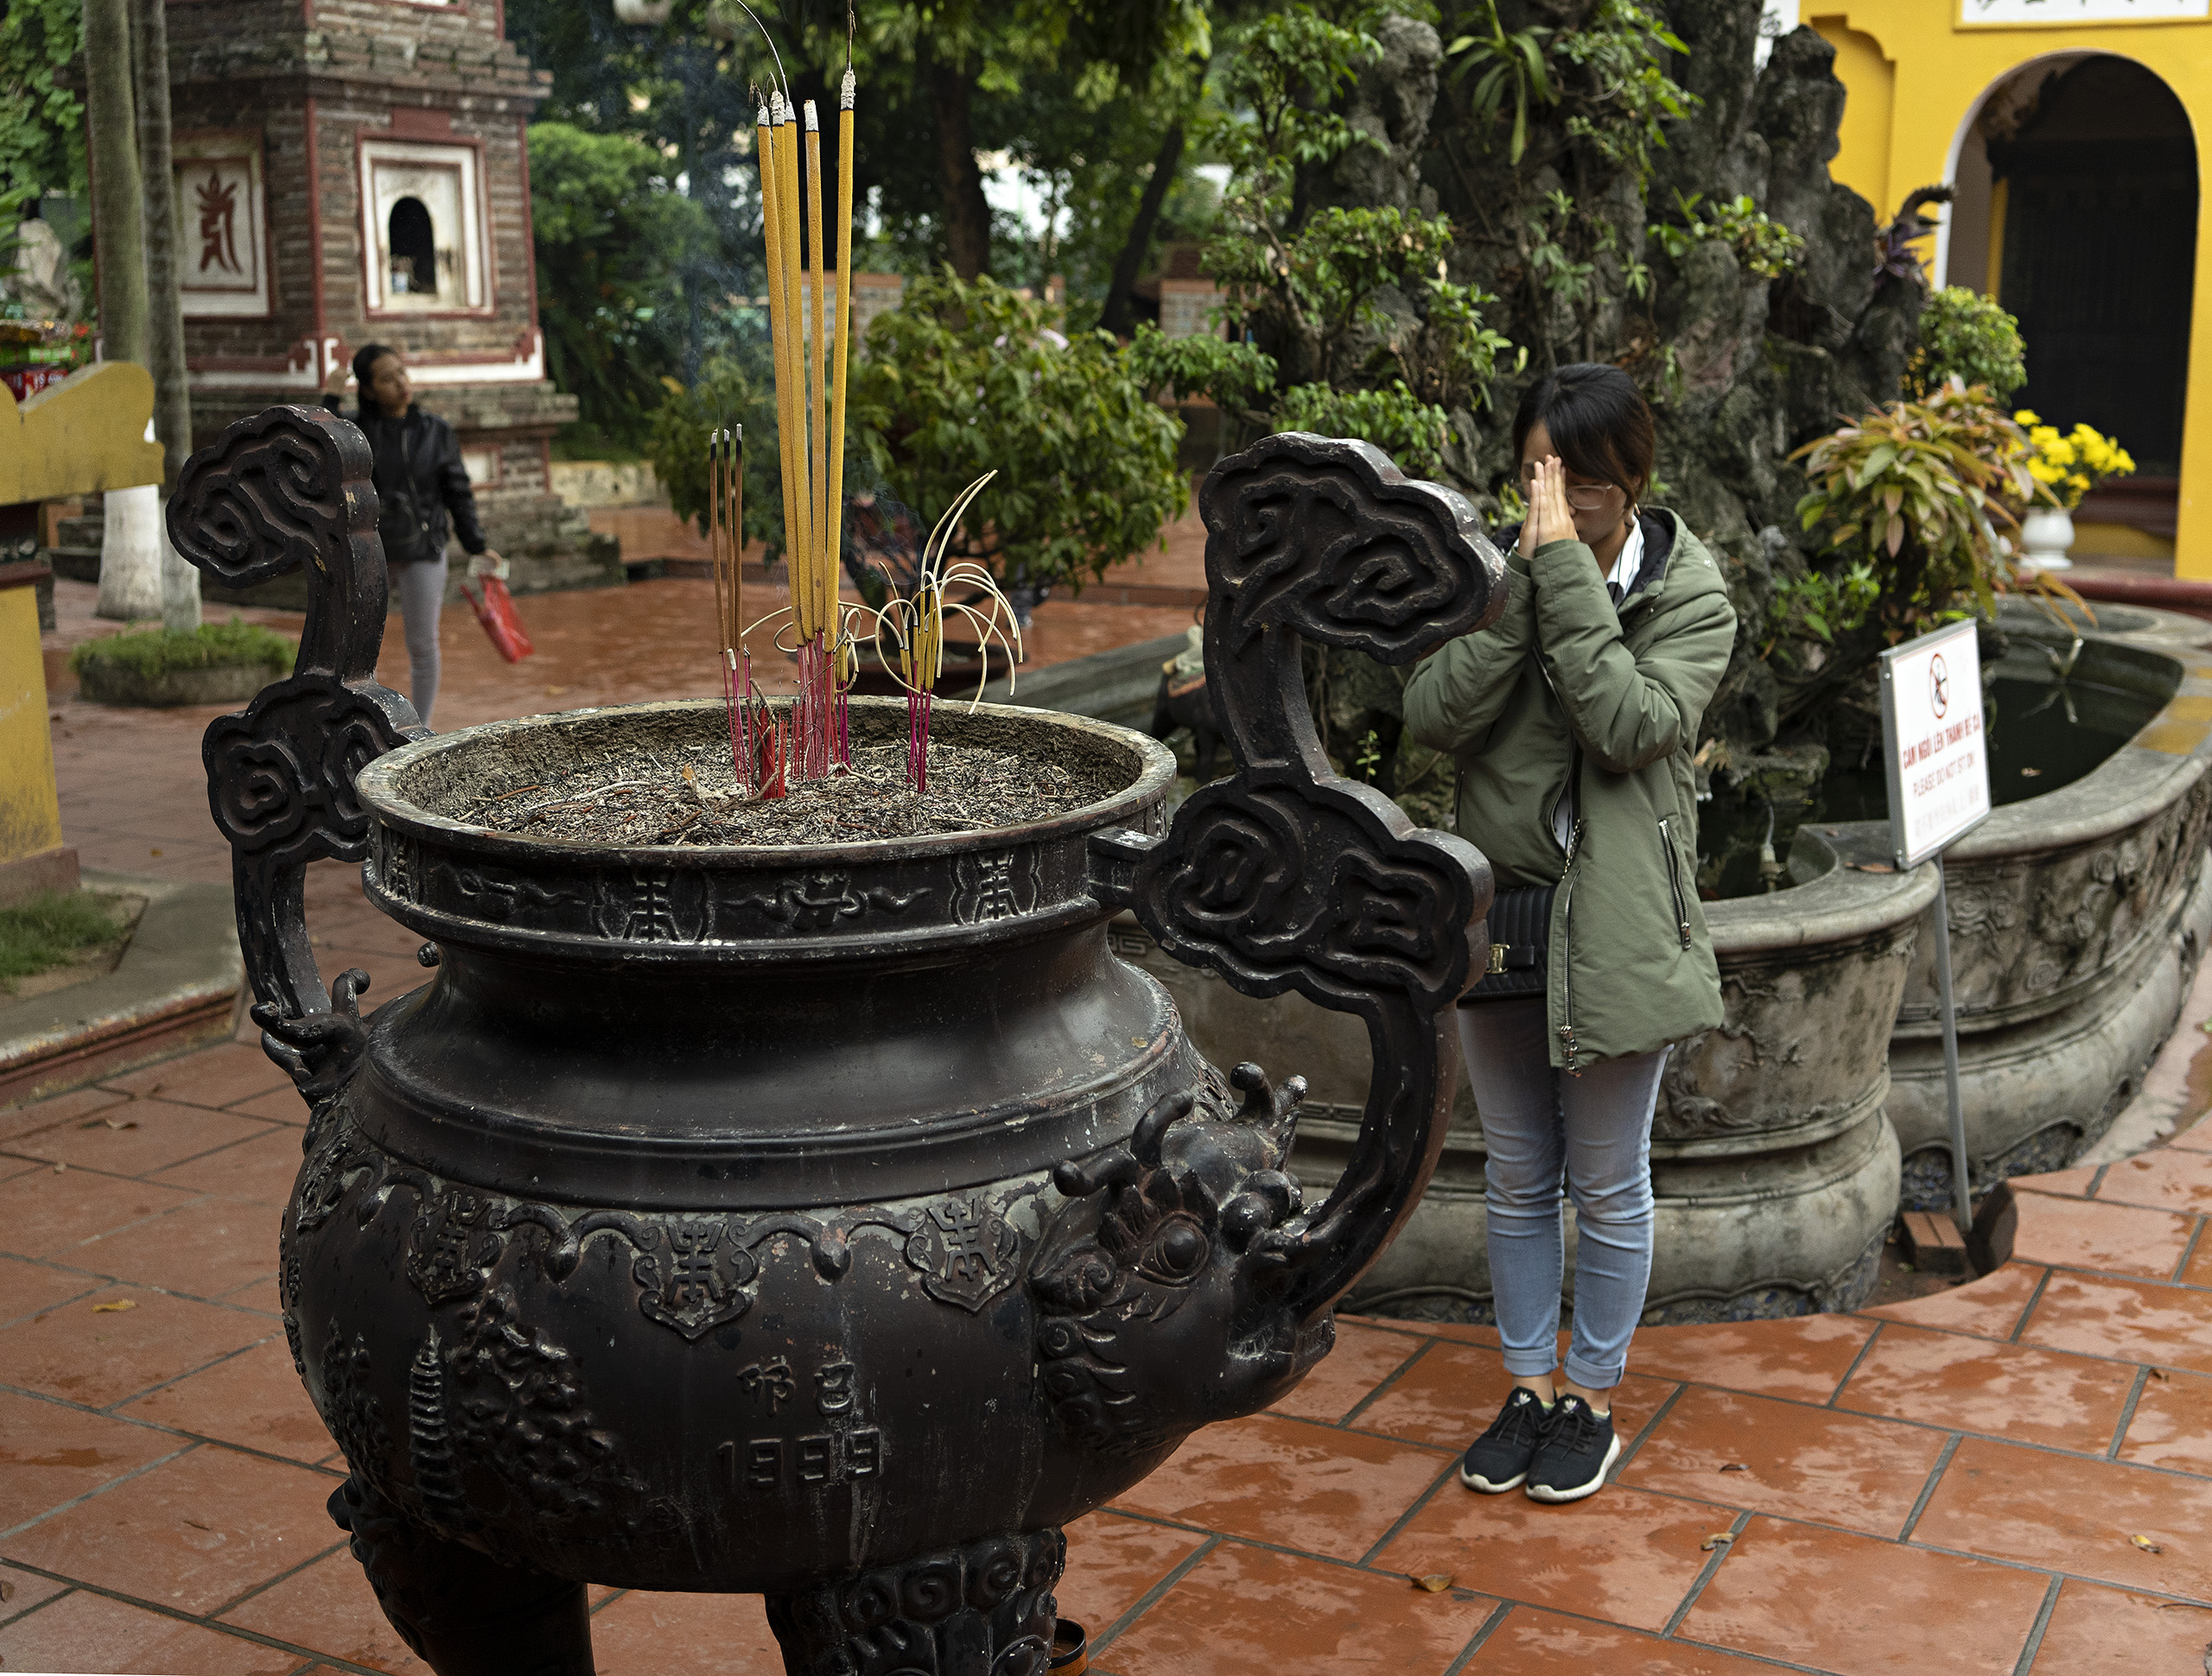 Ha Noi, Leifeng Pagoda prayer